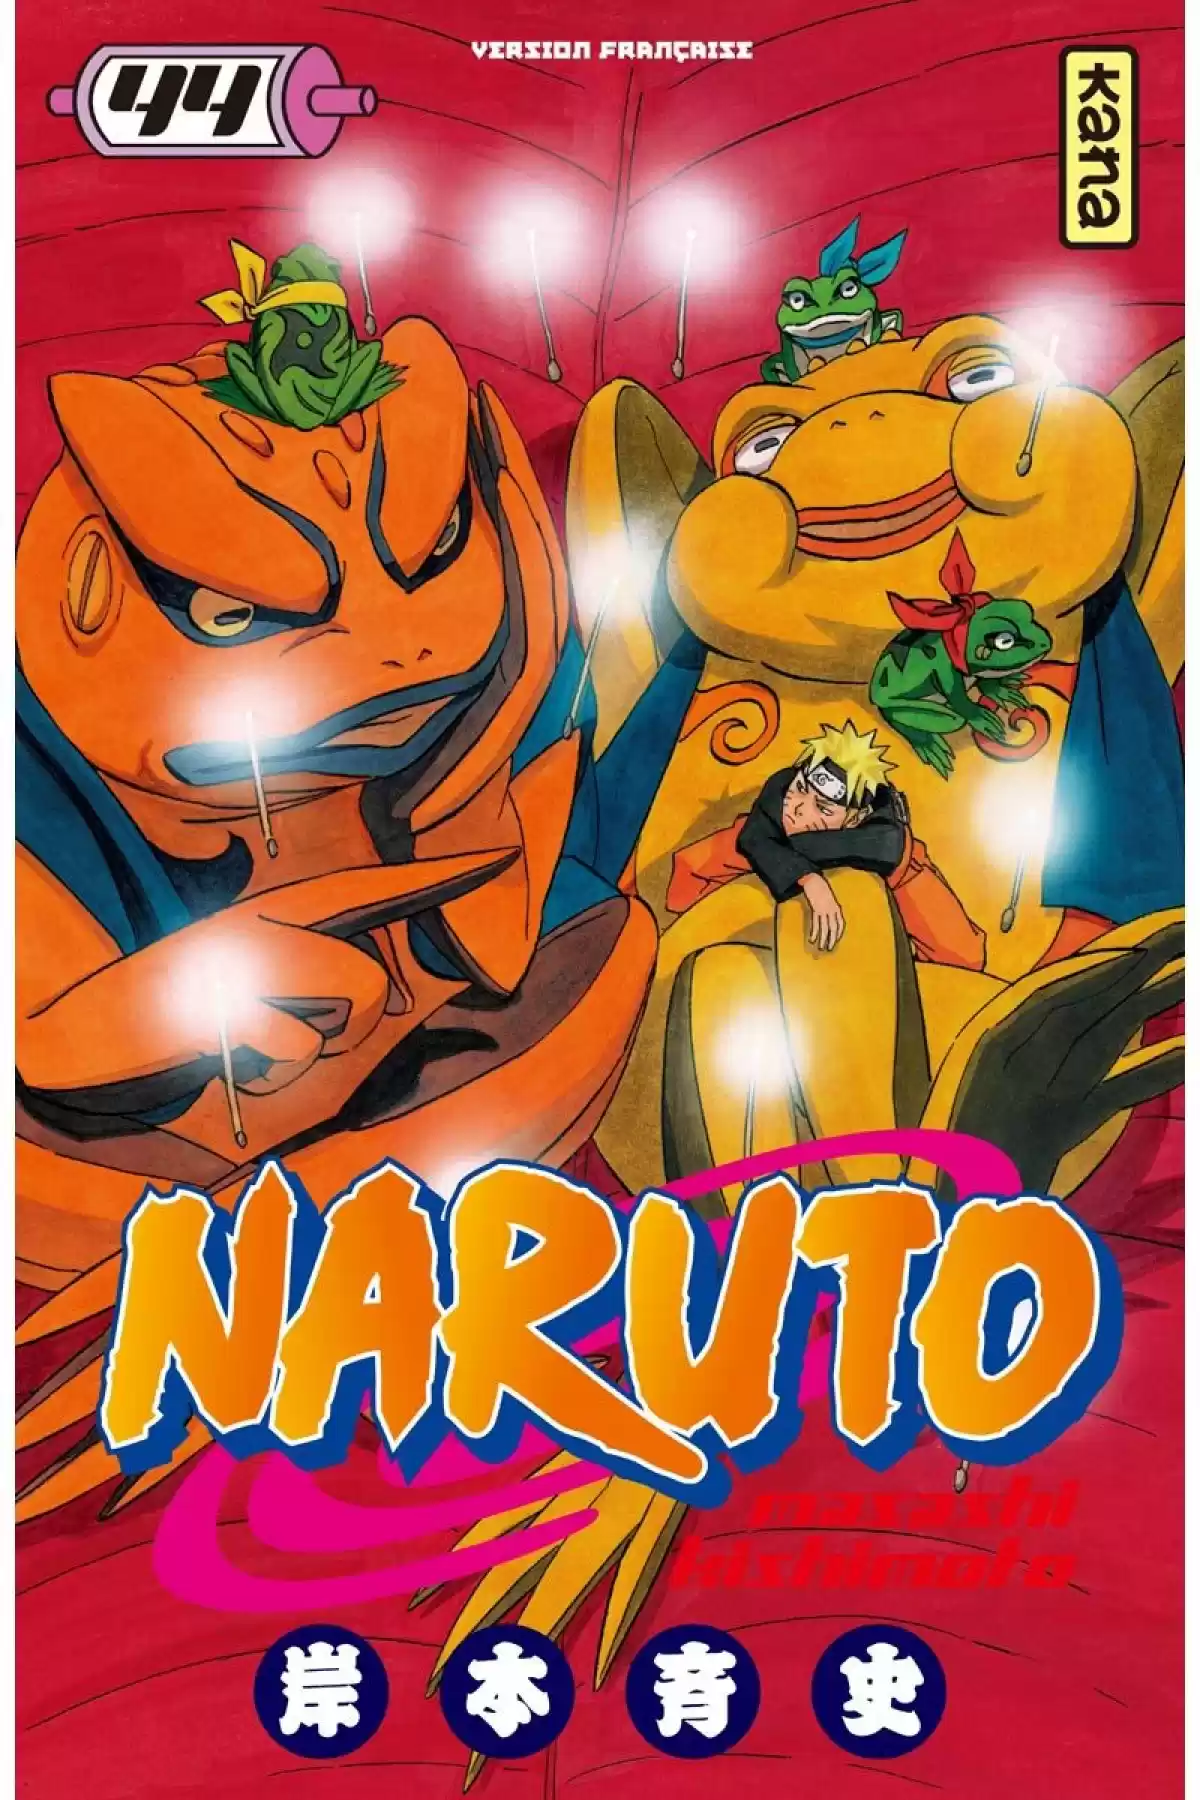 Naruto Volume 44 page 1